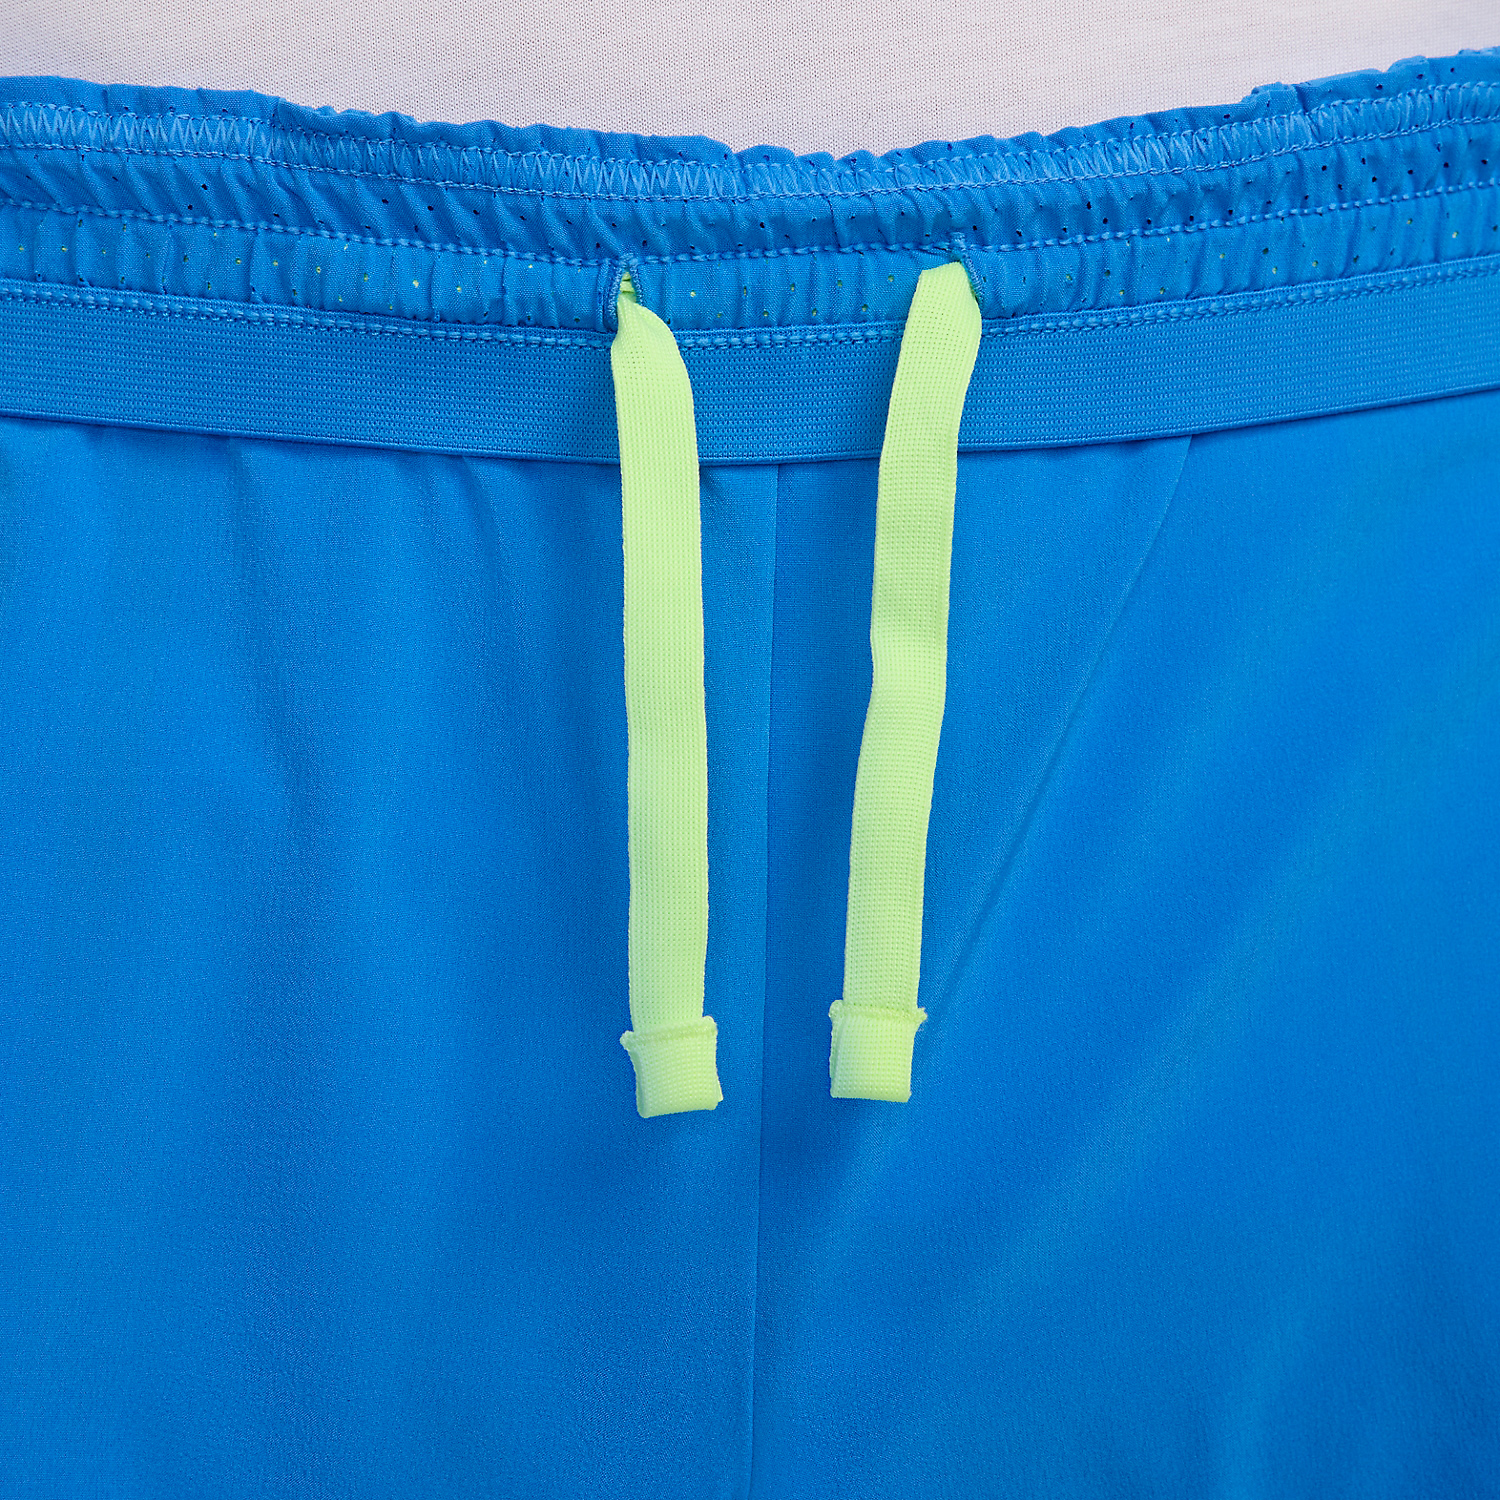 Nike Dri-FIT ADV Rafa Nadal 7in Pantaloncini - Light Photo Blue/Light Lemon Twist/White